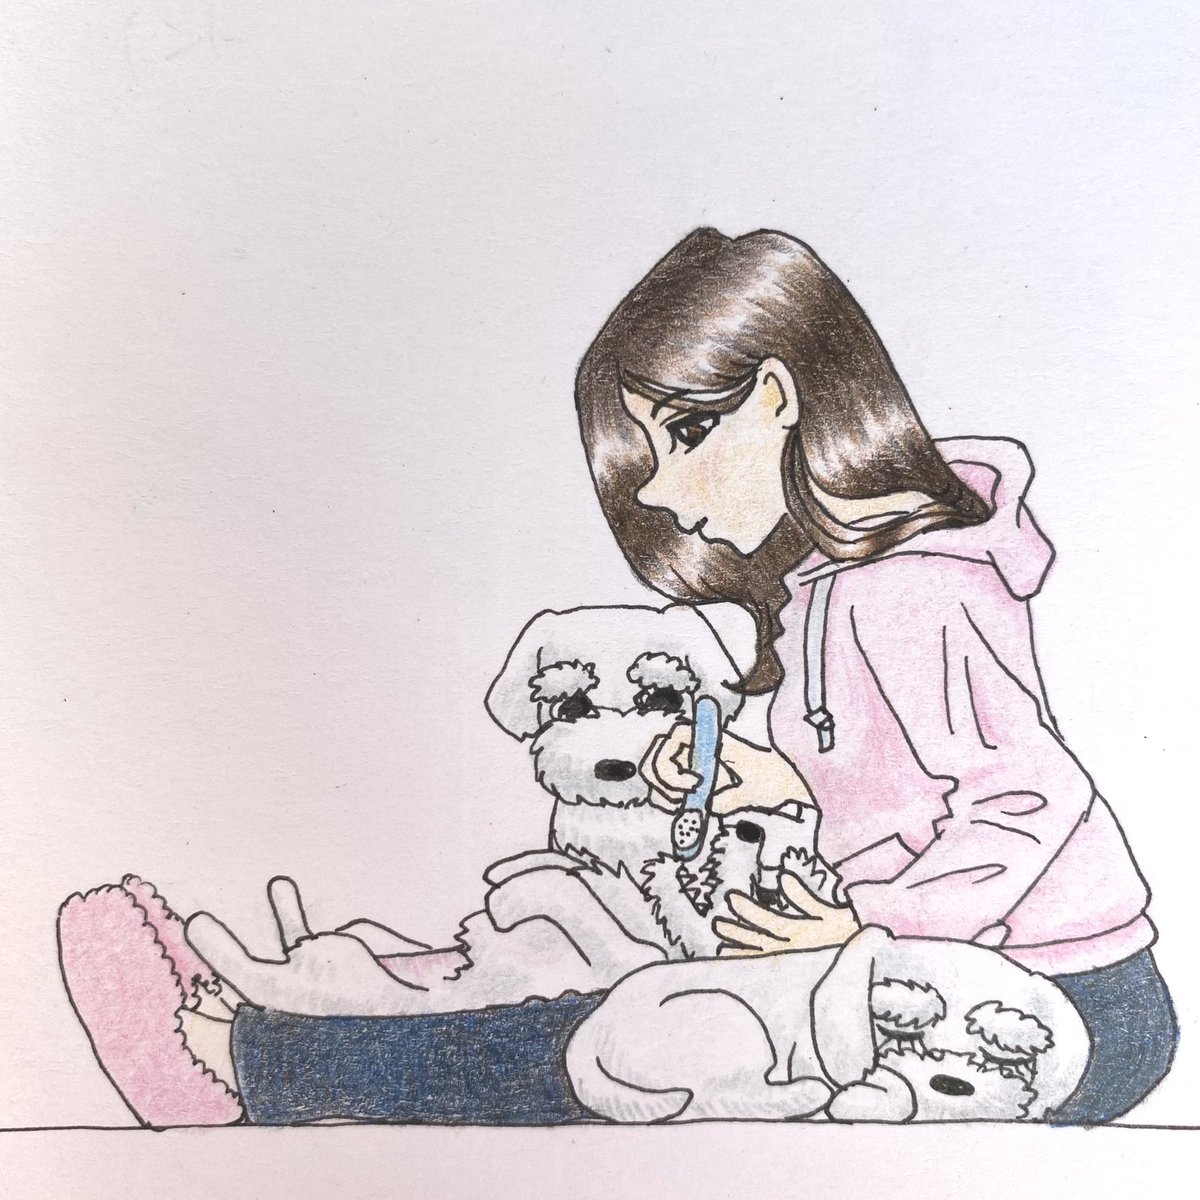 今日のお絵描き。ワンコの歯を磨きましょう🦷足の間に挟まれているのが羨ましくて一緒に寝たり、口の中をガン見したりと可愛い仕草を見せてくれます。#お絵描き #イラスト #アナログ絵 #drawing #illustration #犬 #dog #シュナウザー #schnauzer #歯磨き #BrushTeeth